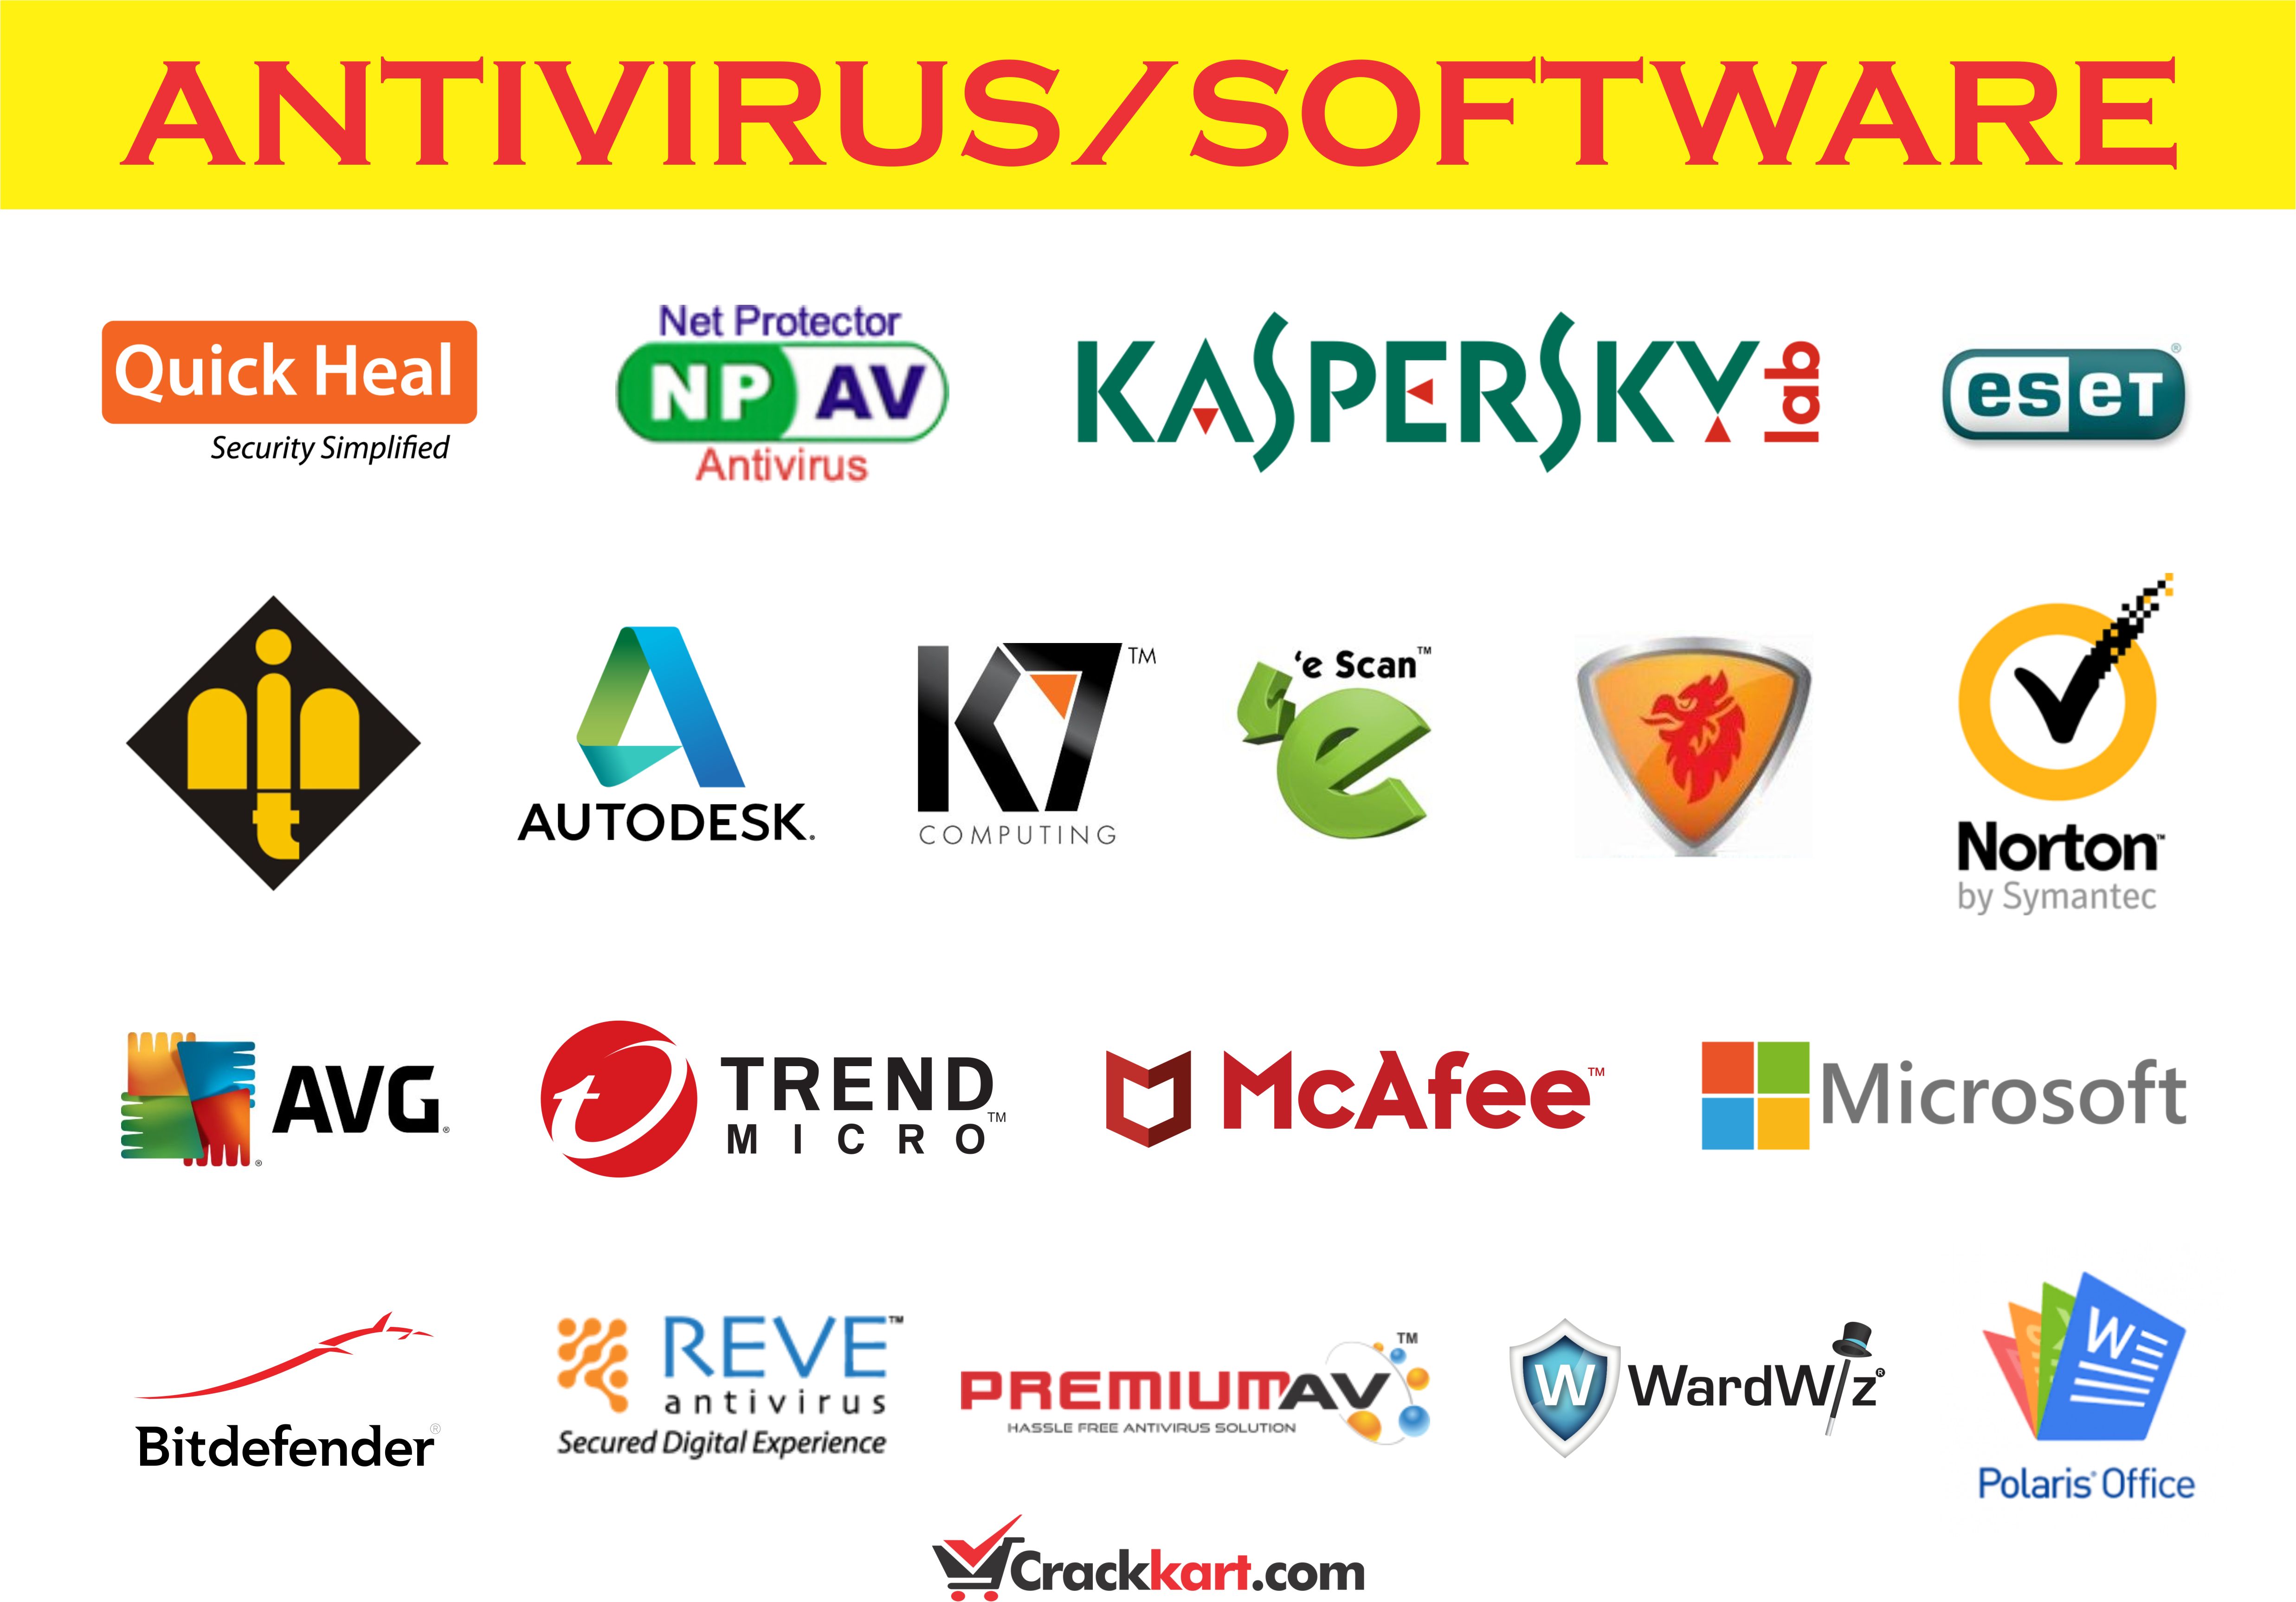 Crackkart: Buy Antivirus/Software get instant delivery online in few seconds.